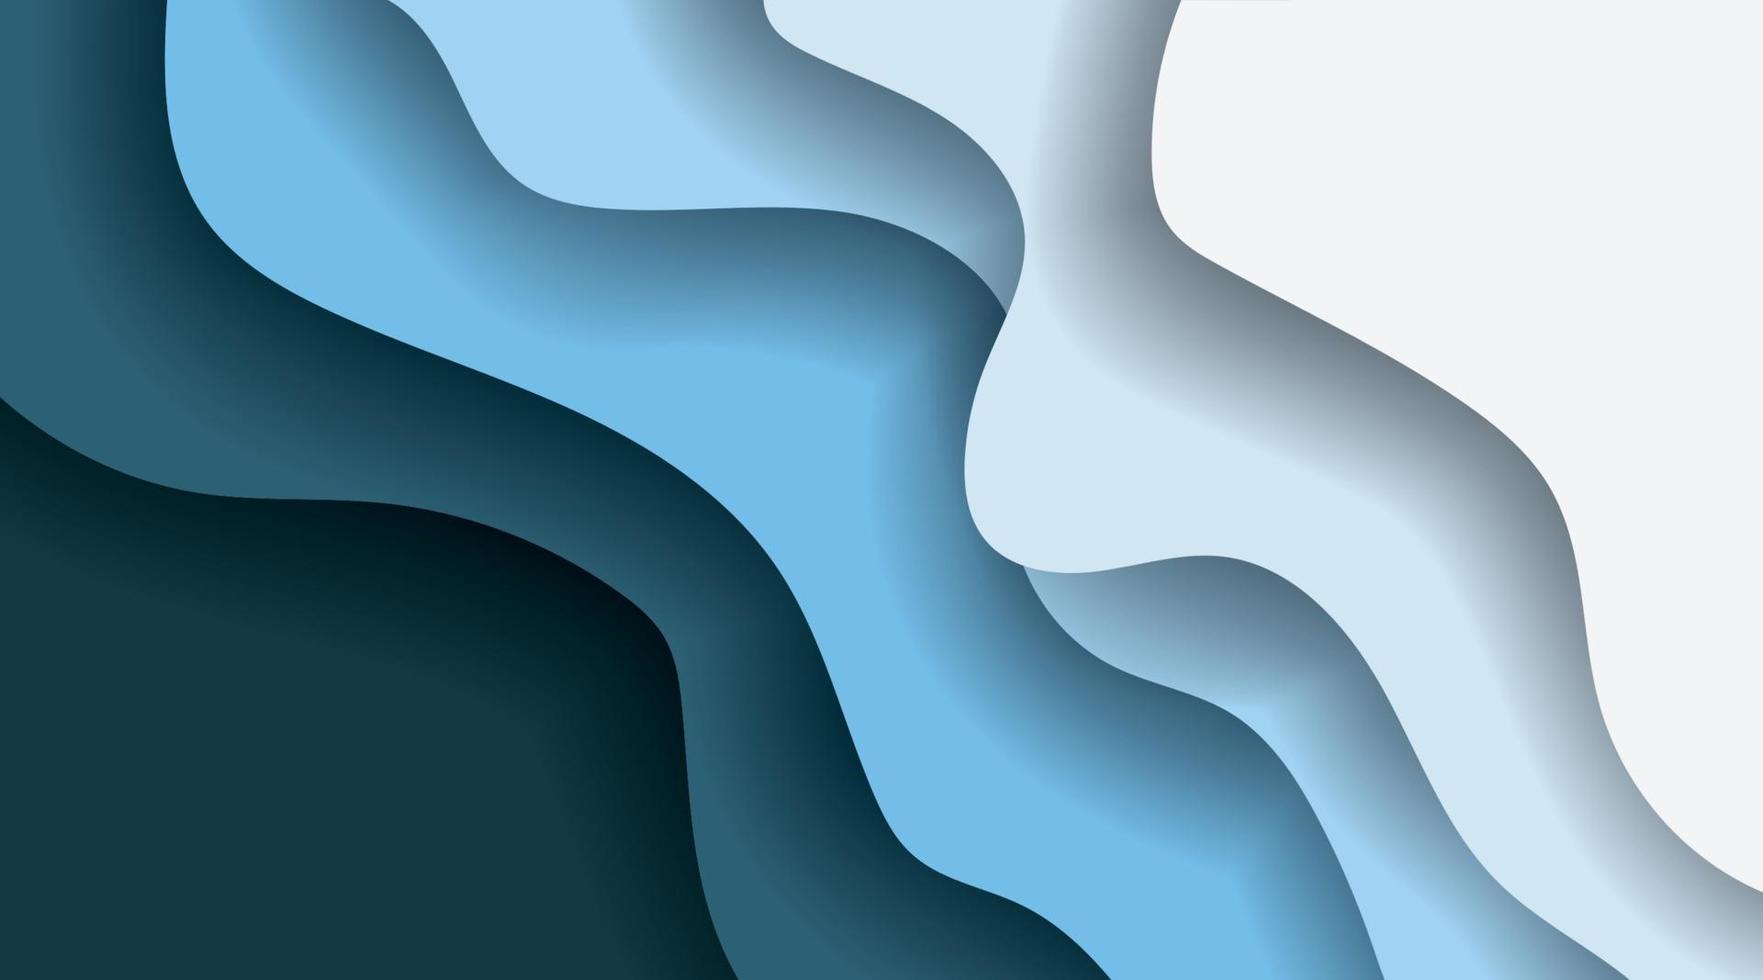 överlappande vågor bakgrund. djupa havet vektor design illustration.